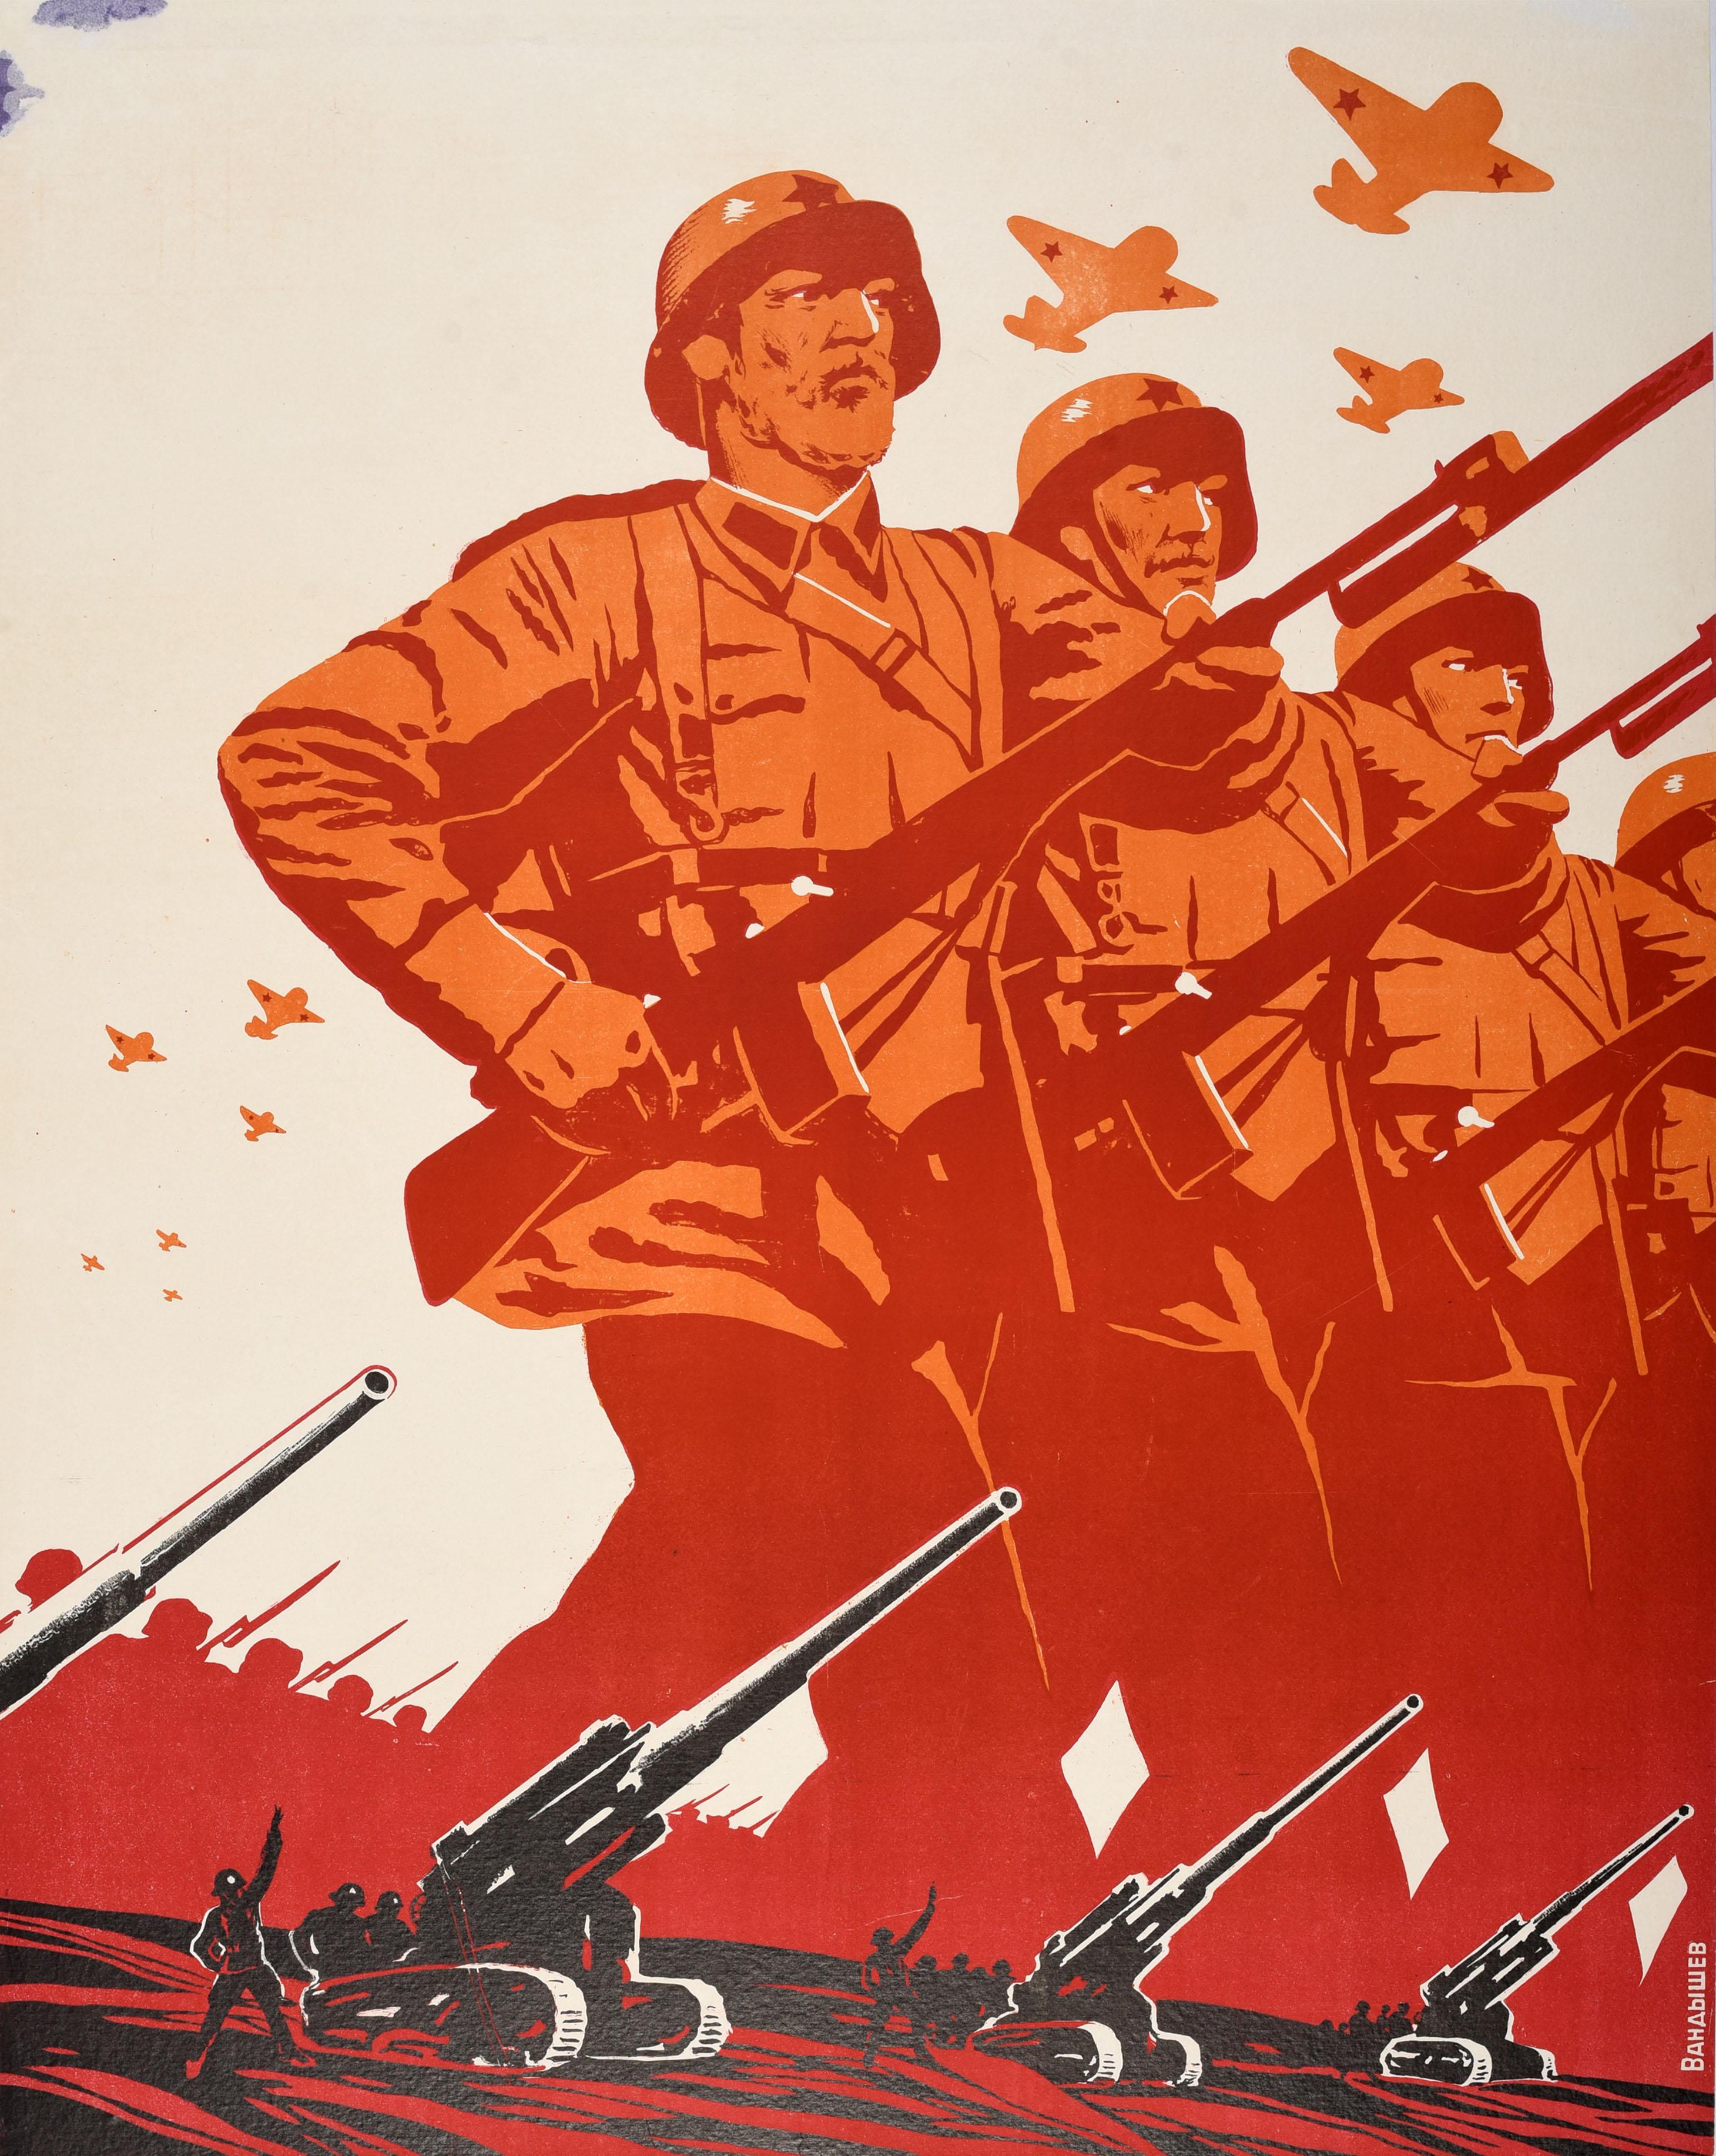 Originales sowjetisches Propagandaplakat aus dem Zweiten Weltkrieg zur Verteidigung des Mutterlandes UdSSR, Vintage – Print von Unknown